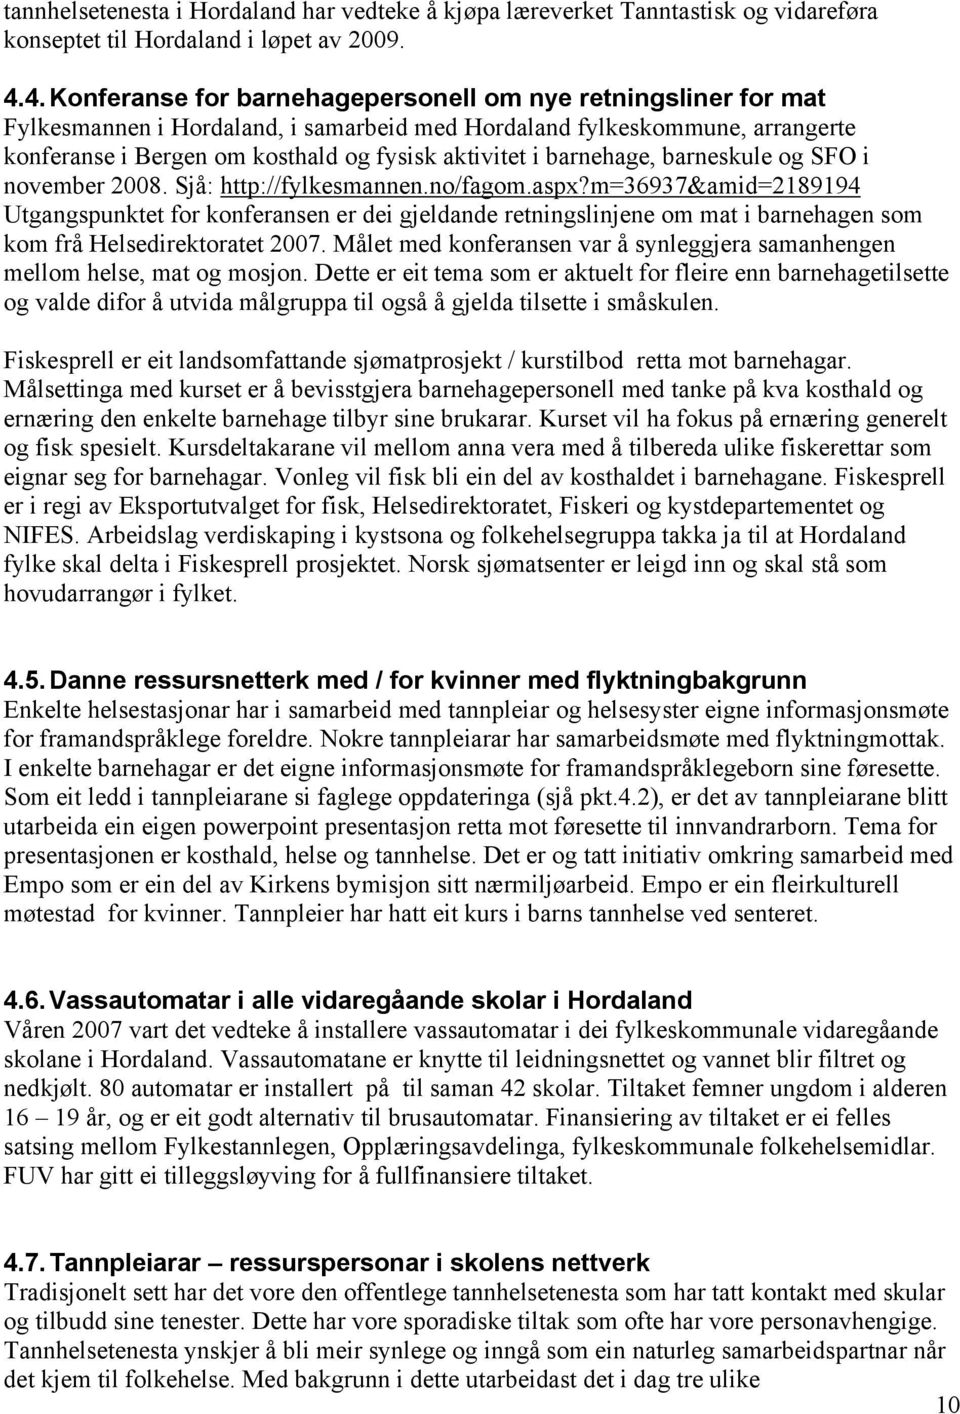 barnehage, barneskule og SFO i november 2008. Sjå: http://fylkesmannen.no/fagom.aspx?